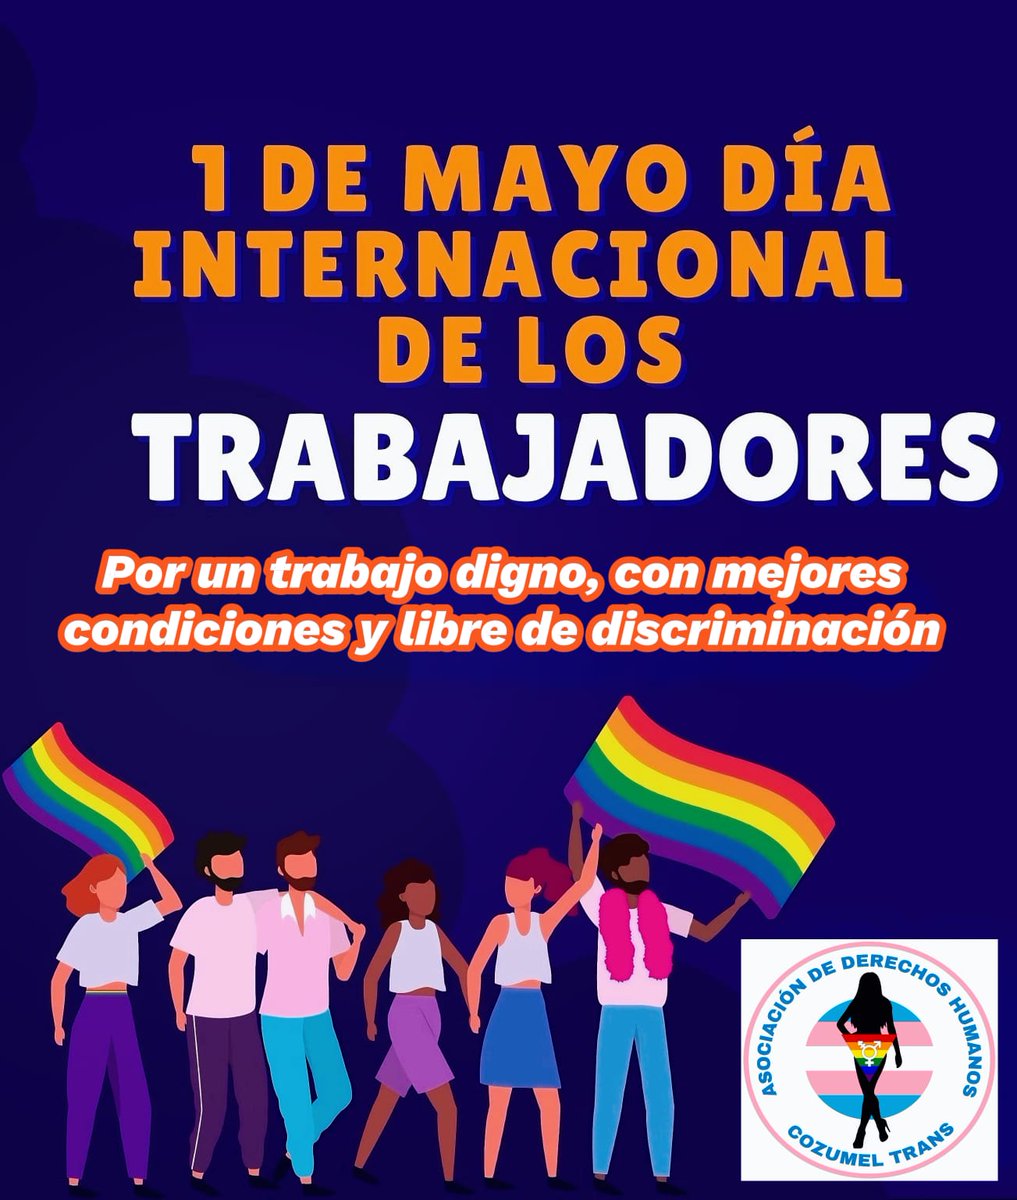 Derechos laborales. 

Por una Honduras inclusiva, dónde la orientación sexual o la expresión e identidad de género no sea un obstáculo en el trabajo. 

#InclusionLaboral 
#DerechosLaborales